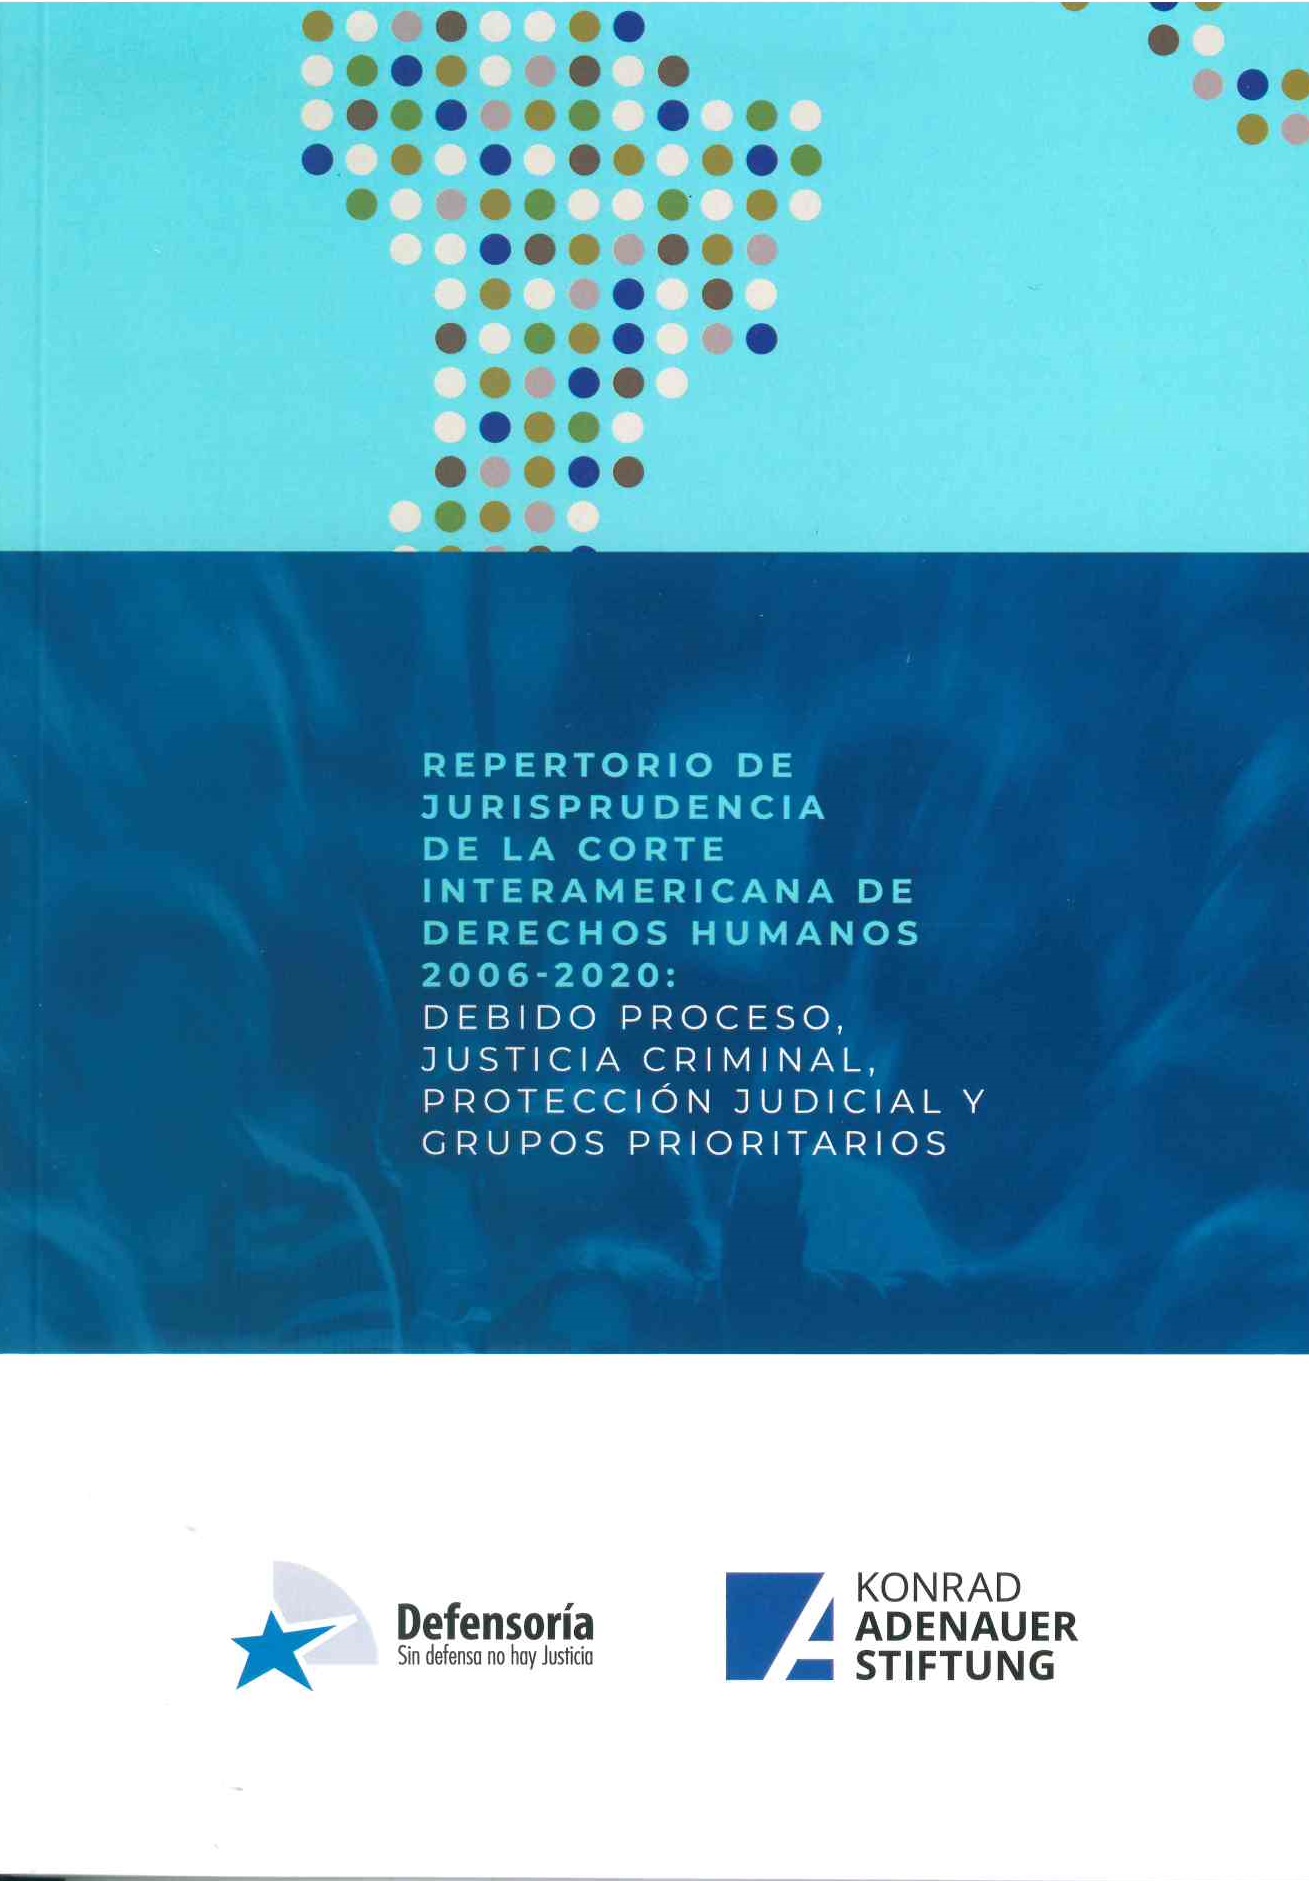 Repertorio de jurisprudencia de la corte interamericana de derechos humanos 2006- 2020. Debido proceso, justicia criminal, protección judicial y grupos prioritarios